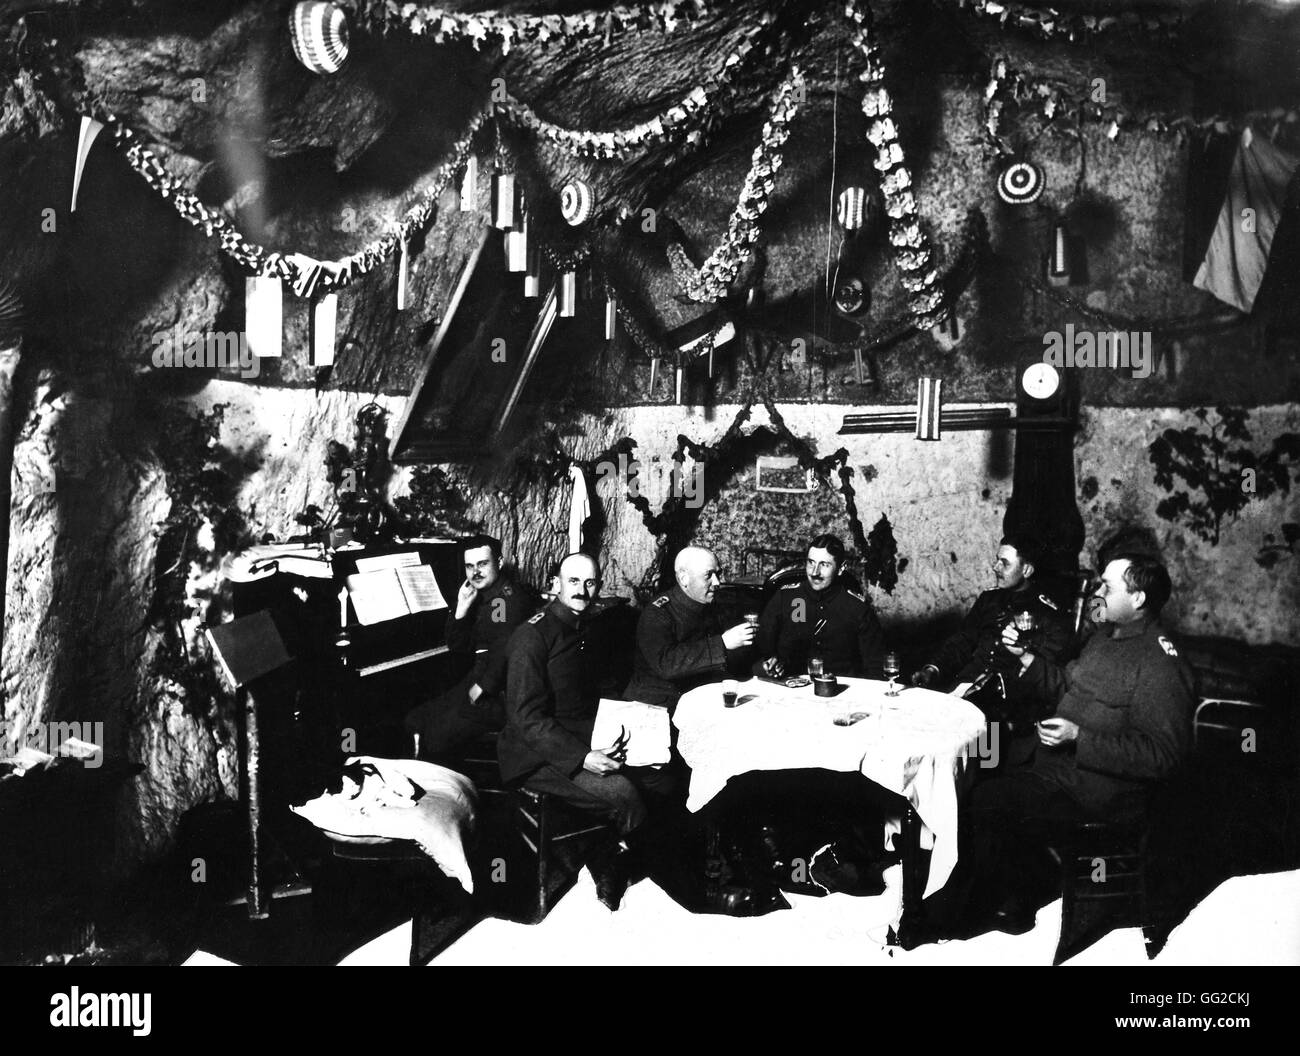 Des Kaisers Geburtstag (Wilhelm II) in einer Offiziersmesse Deutschland, 914-1918 Krieg München, Südd Verlag Bild archiv Stockfoto